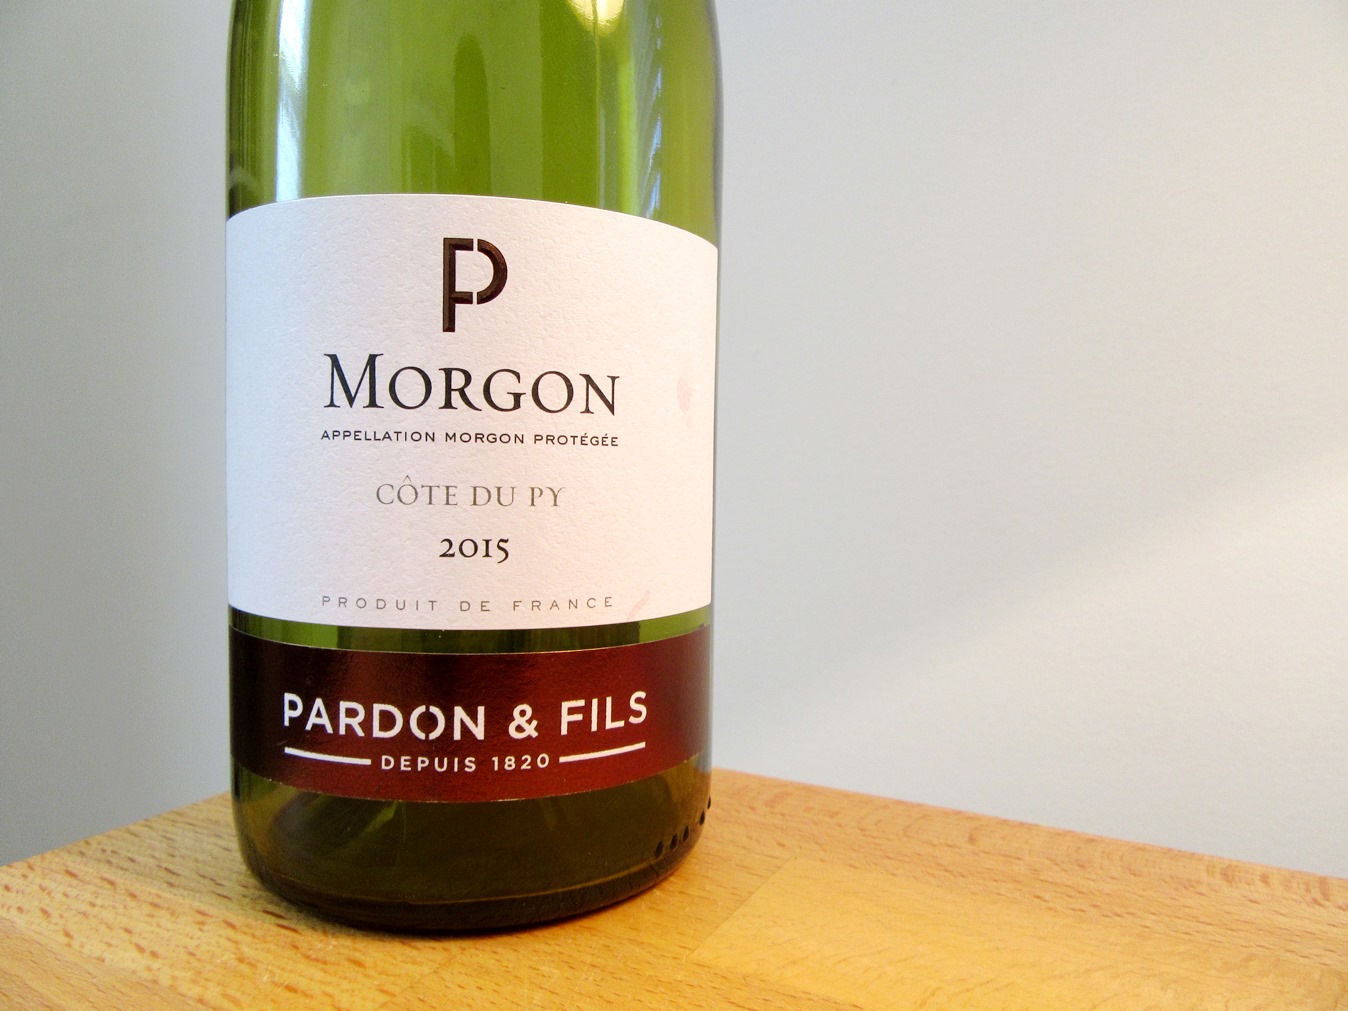 Pardon & Fils, La Côte du Py Morgon 2015, Beaujolais, France, Wine Casual